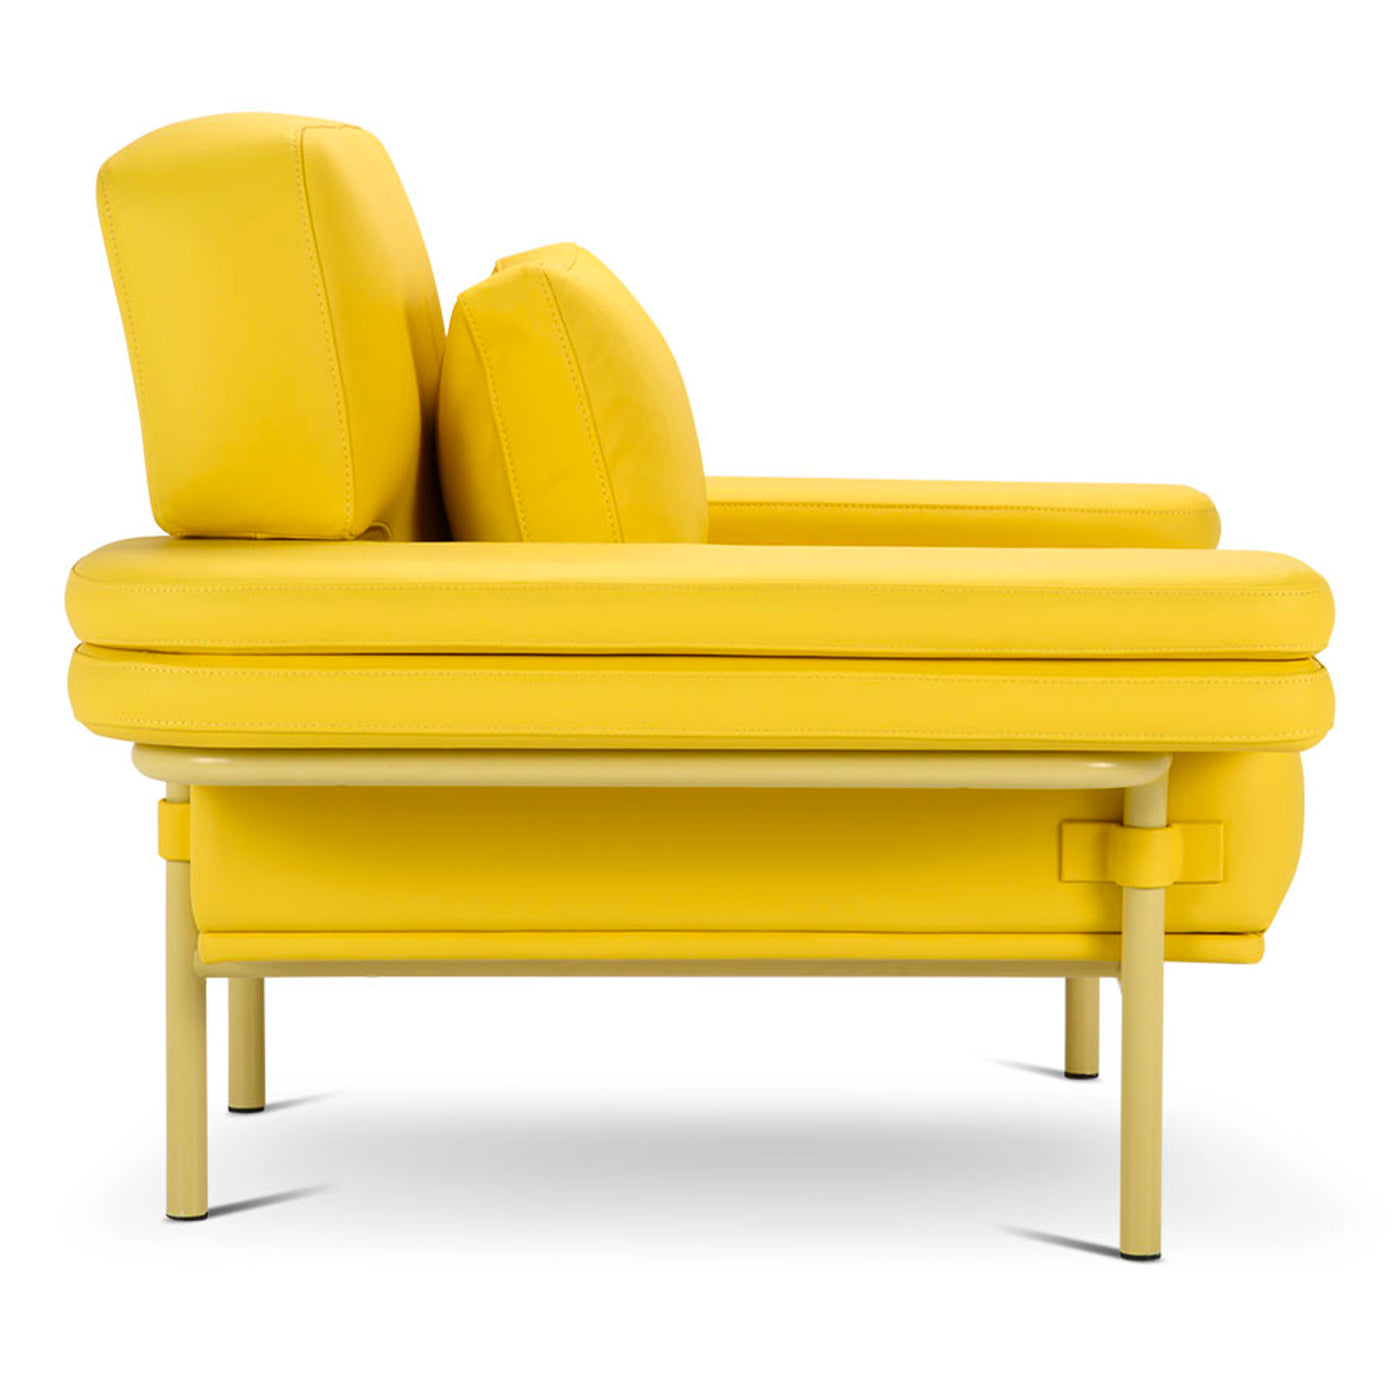 Leo Yellow Armchair by Daria Zinovatnaya - Alternative view 1